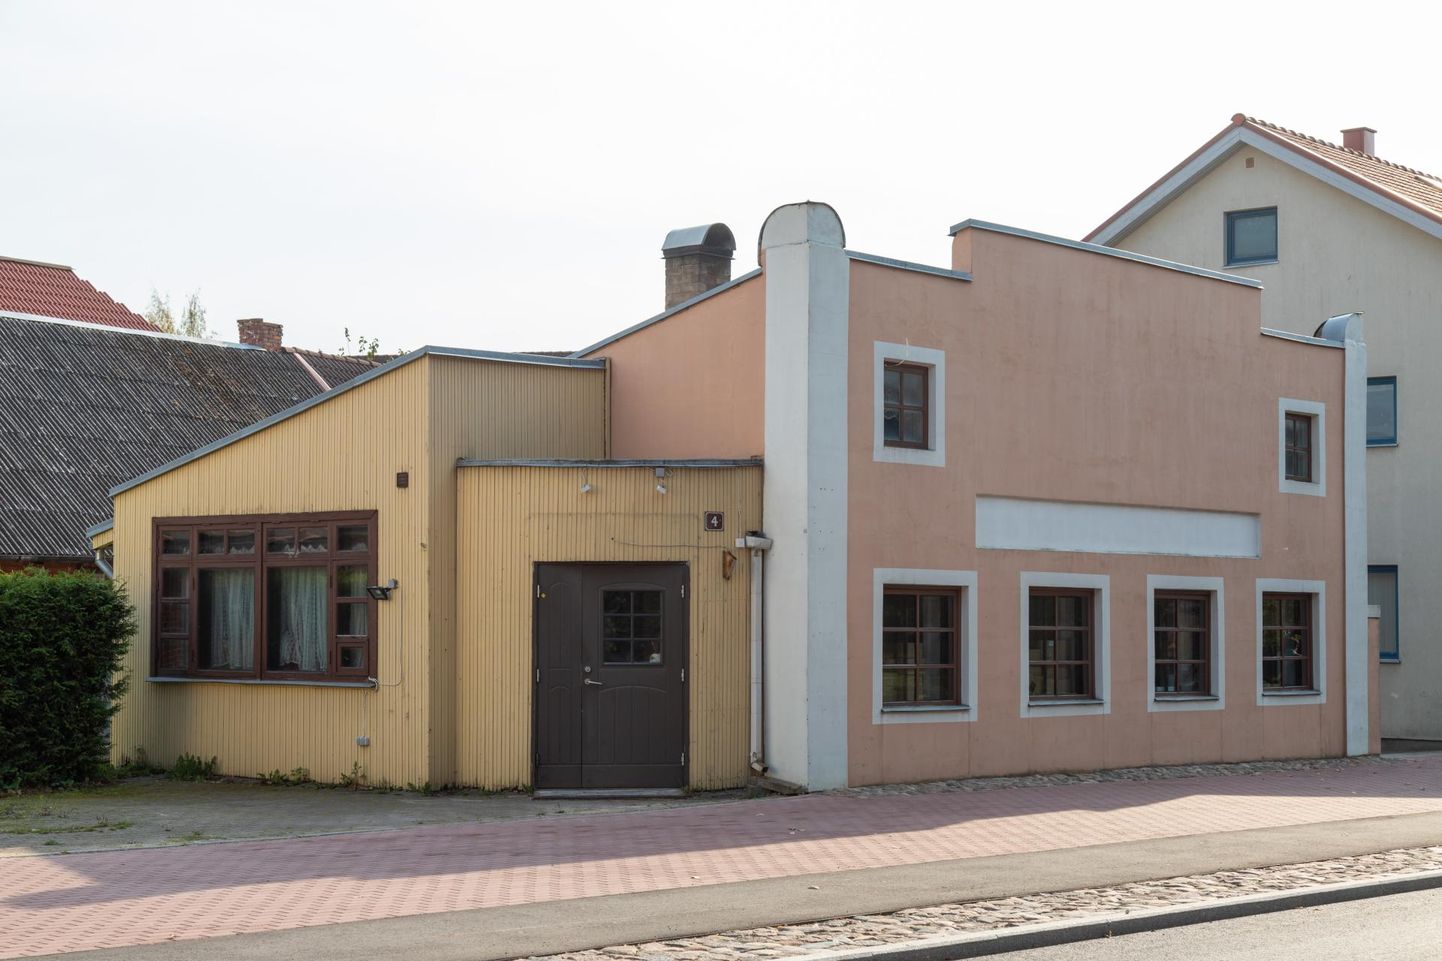 Viking Burgeril on seni kolm toidukohta Saaremaal. Neljas avatakse Viljandis, Tallinna tänava ääres.